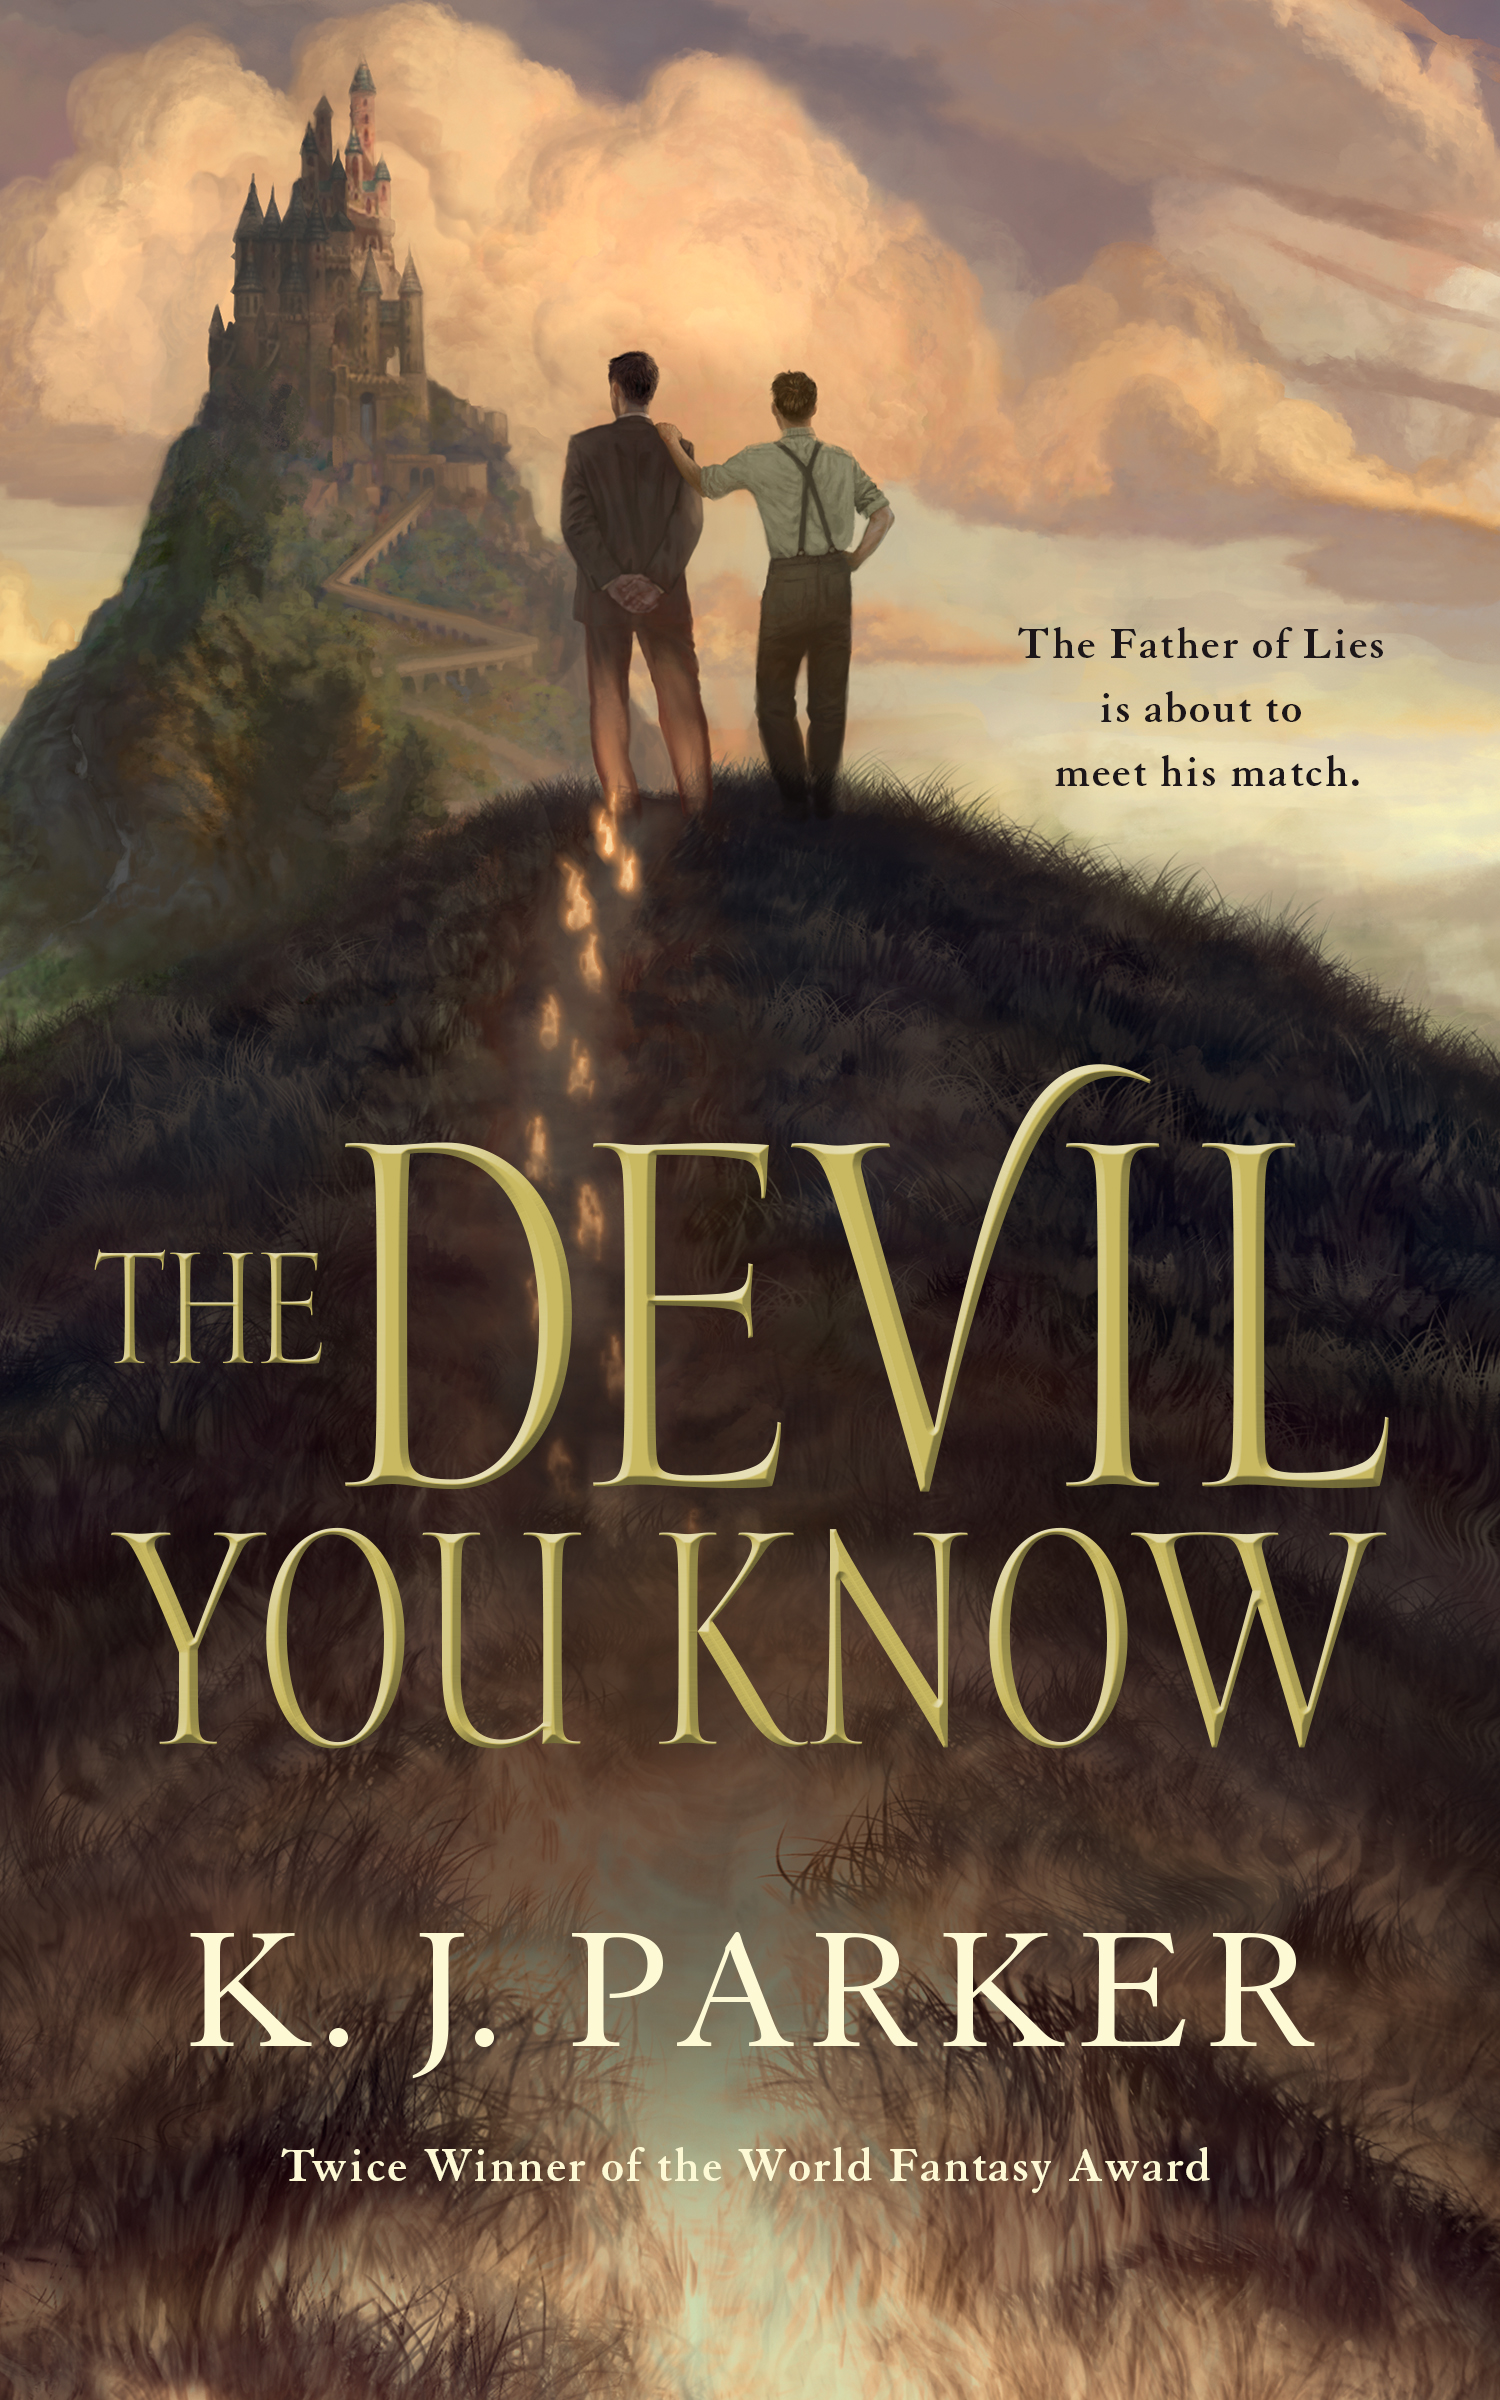 The Devil You Know by K. J. Parker